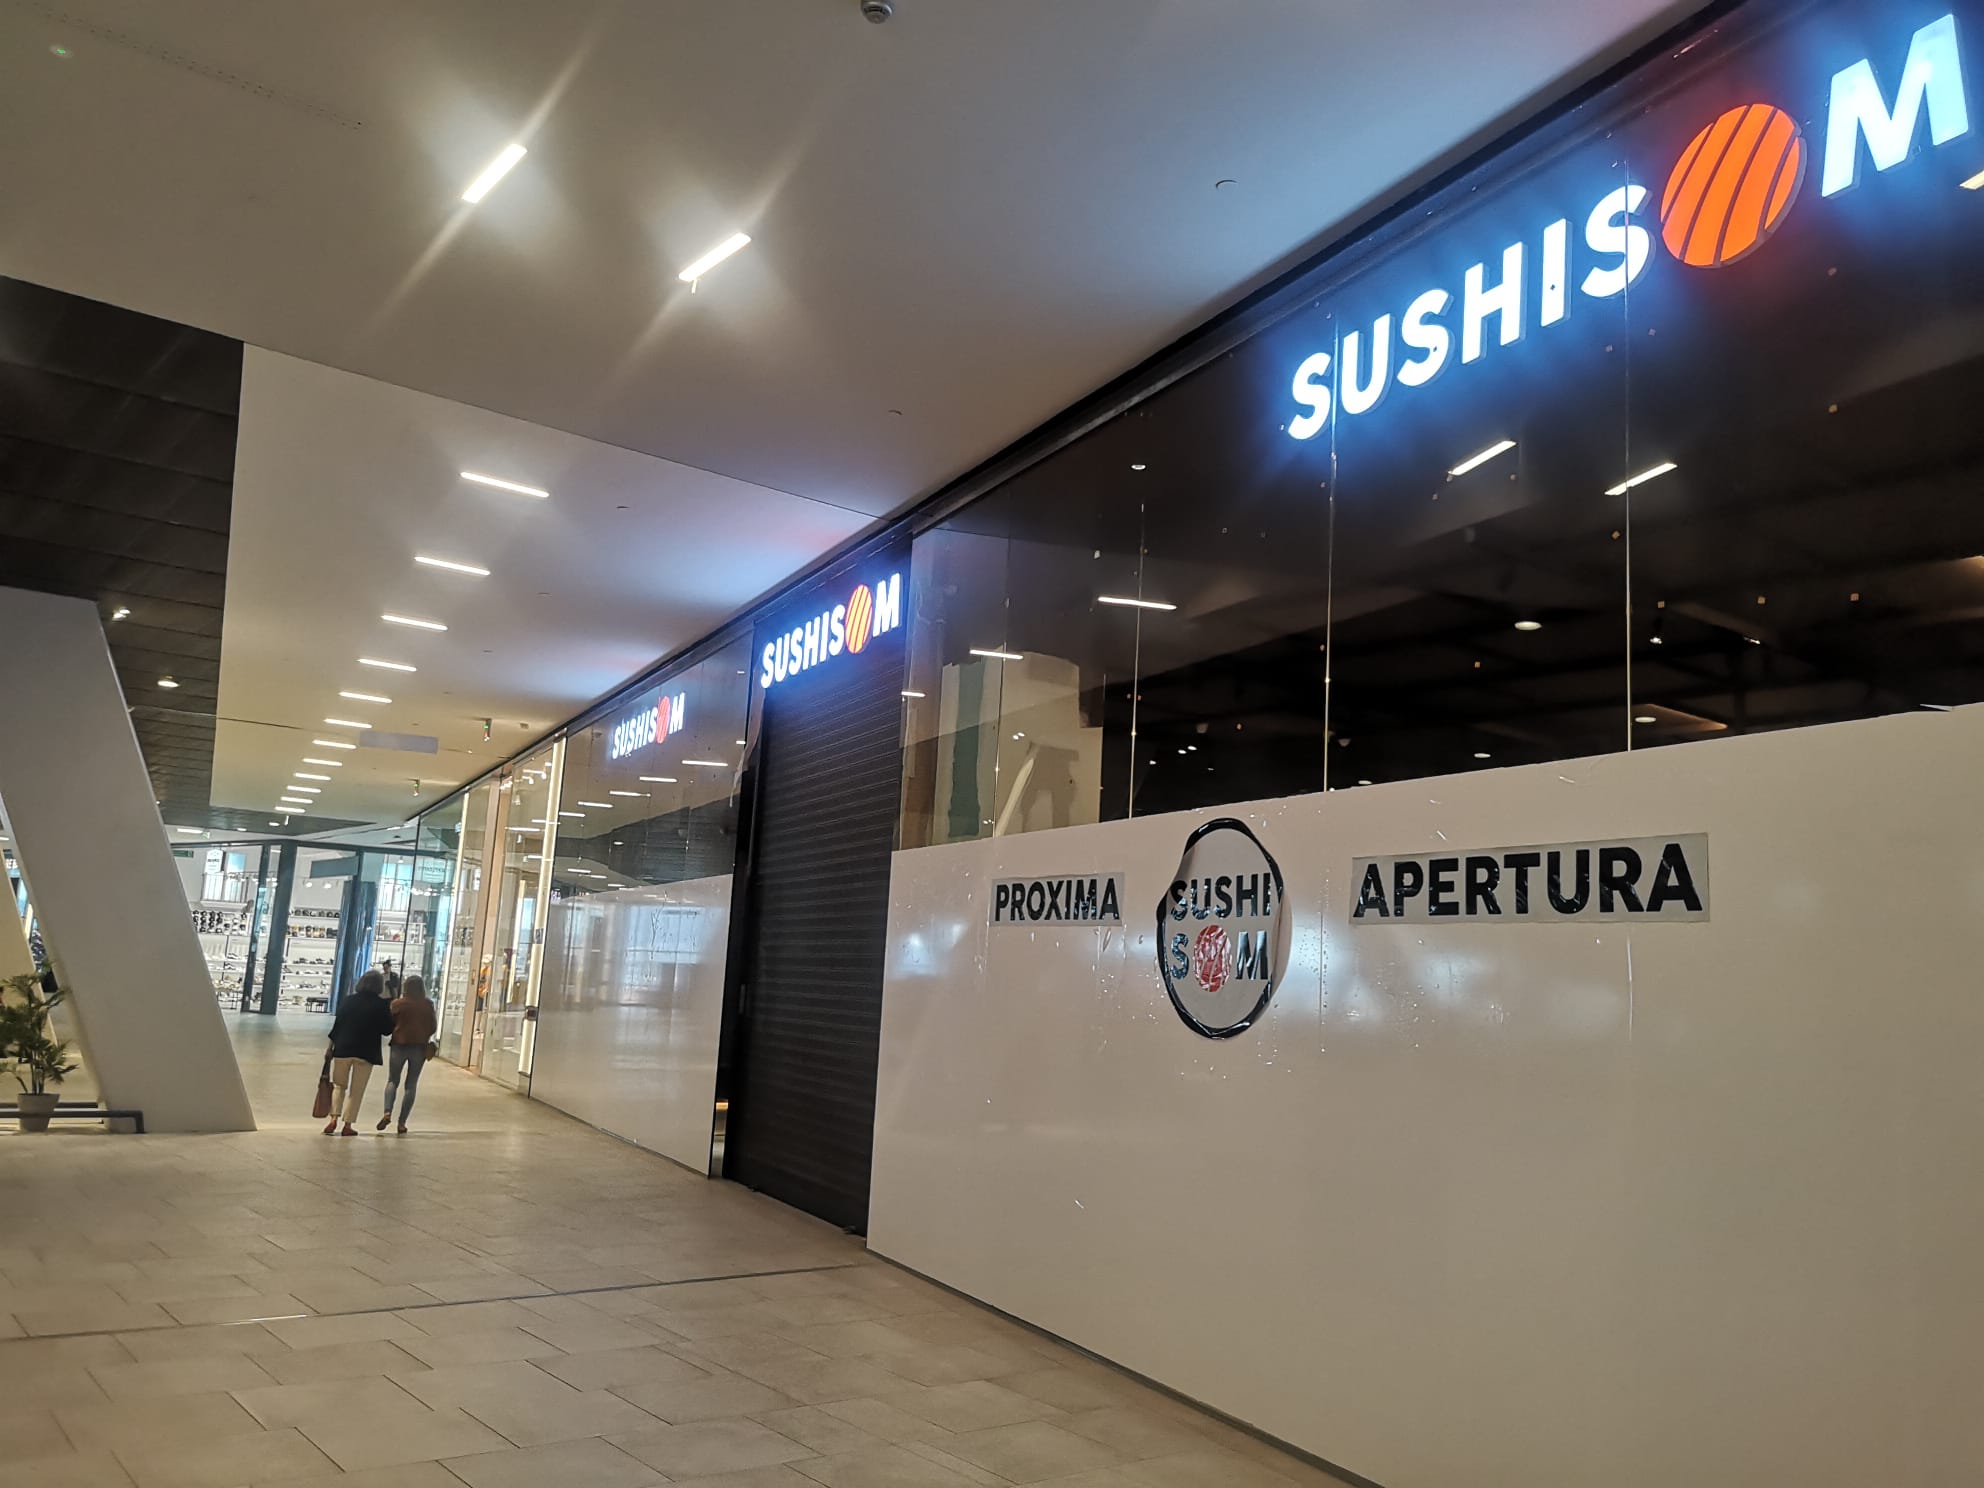 El restaurante Sushisom abre en Vialia con la propuesta "todo lo que puedas comer"